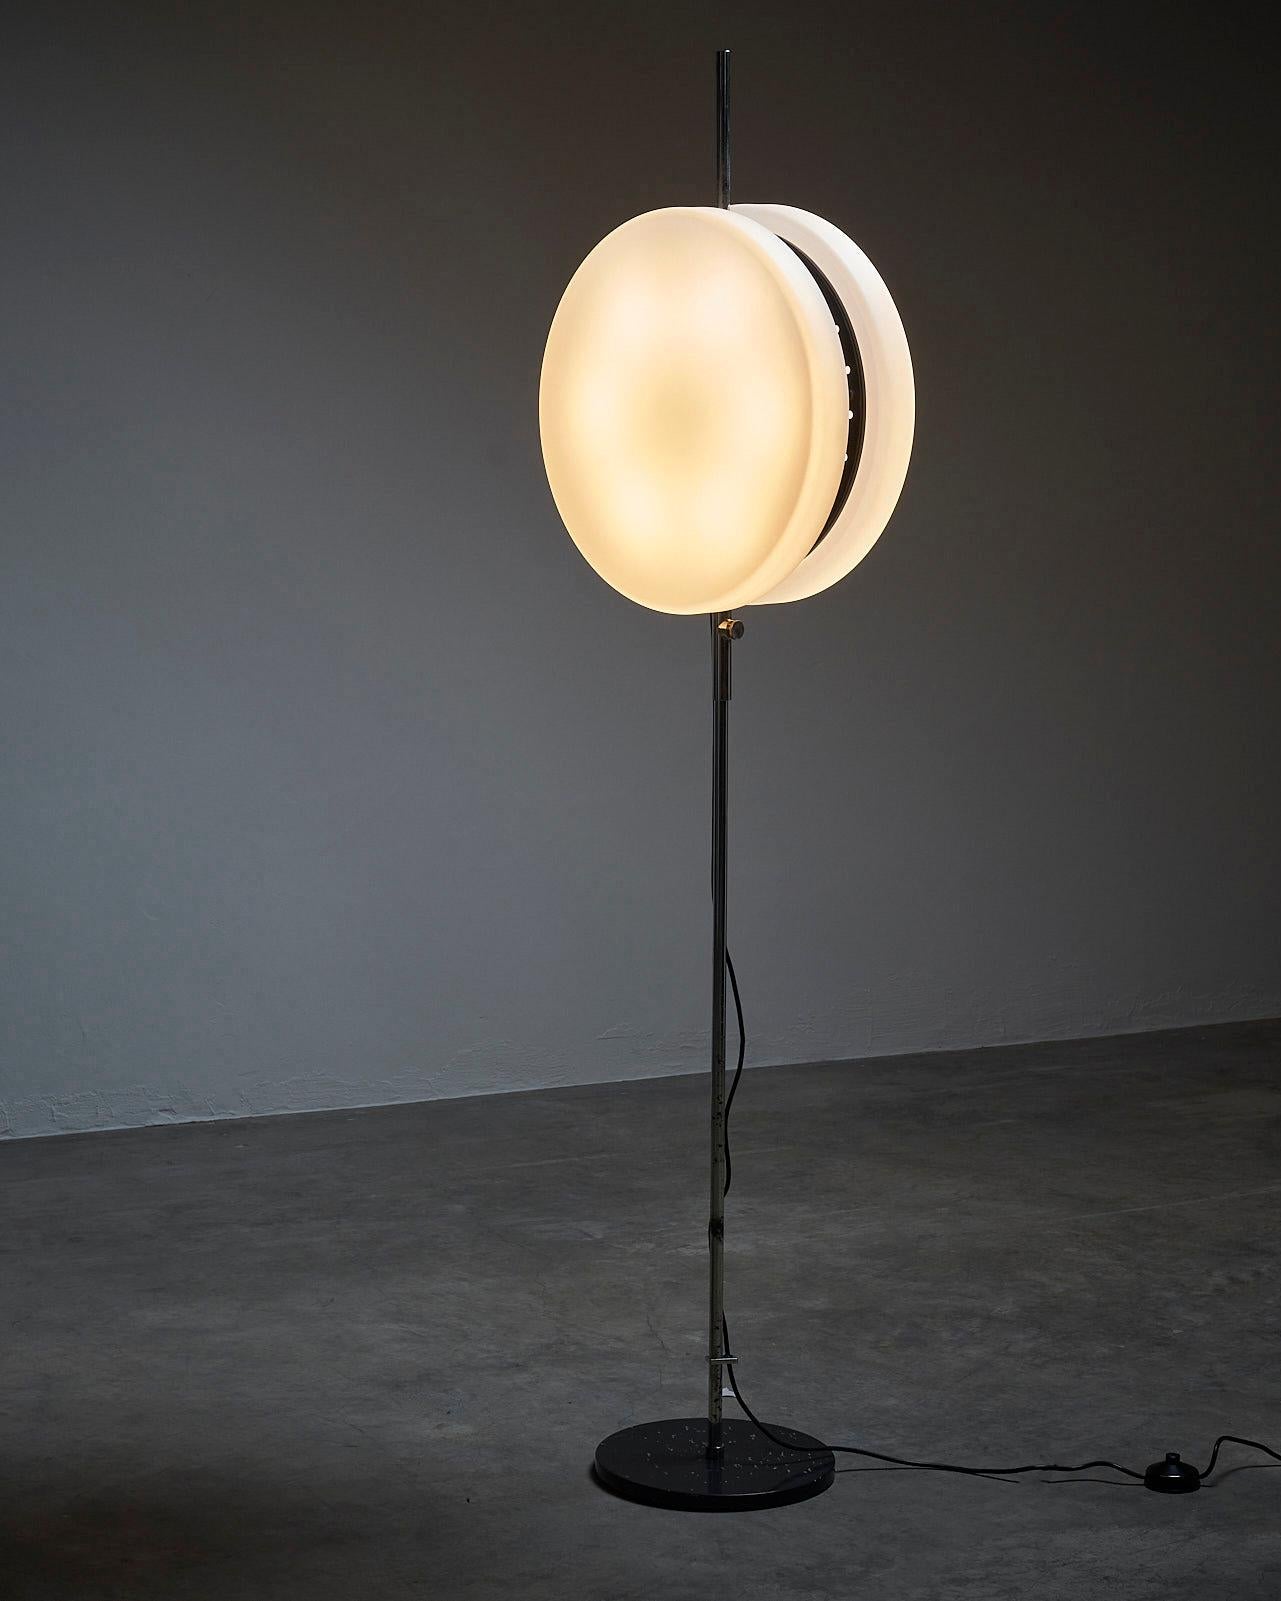 Élevez votre espace avec le lampadaire Pendulum de Kontakt-Werkstätten. Ce lampadaire exceptionnel offre une solution d'éclairage unique et polyvalente qui captivera vos sens. Avec sa base noire épurée et sa tige chromée, il dégage une impression